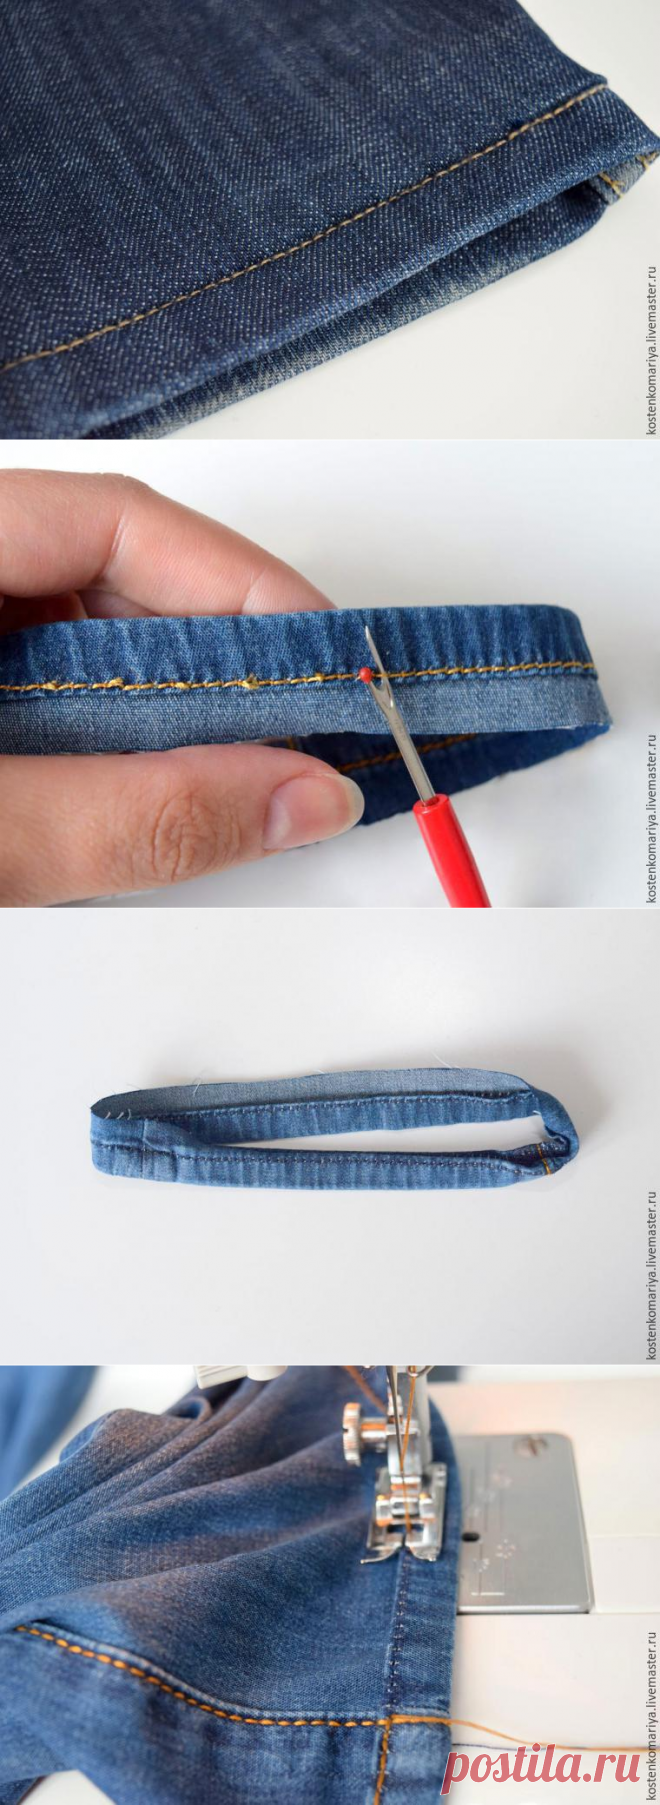 Как подшить джинсы, оставив производственные потертости - Ярмарка Мастеров - ручная работа, handmade